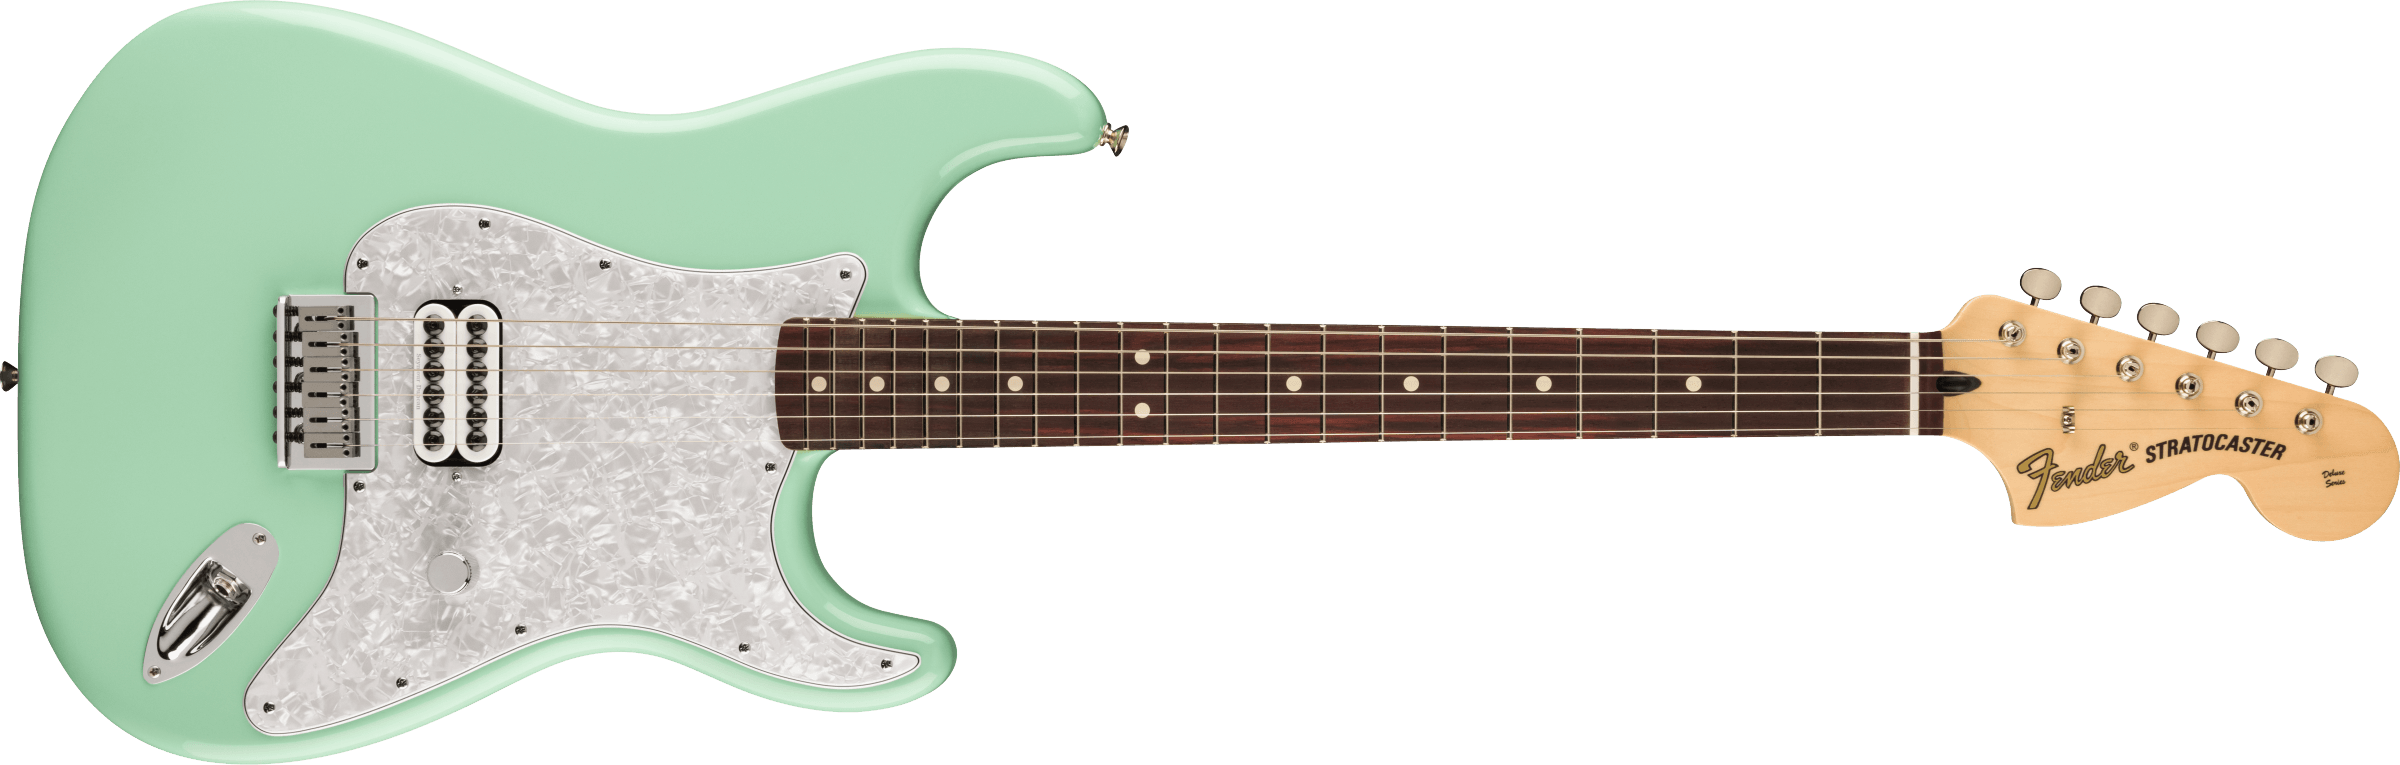 FENDER - Ltd. Tom Delonge Stratocaster Surf Green